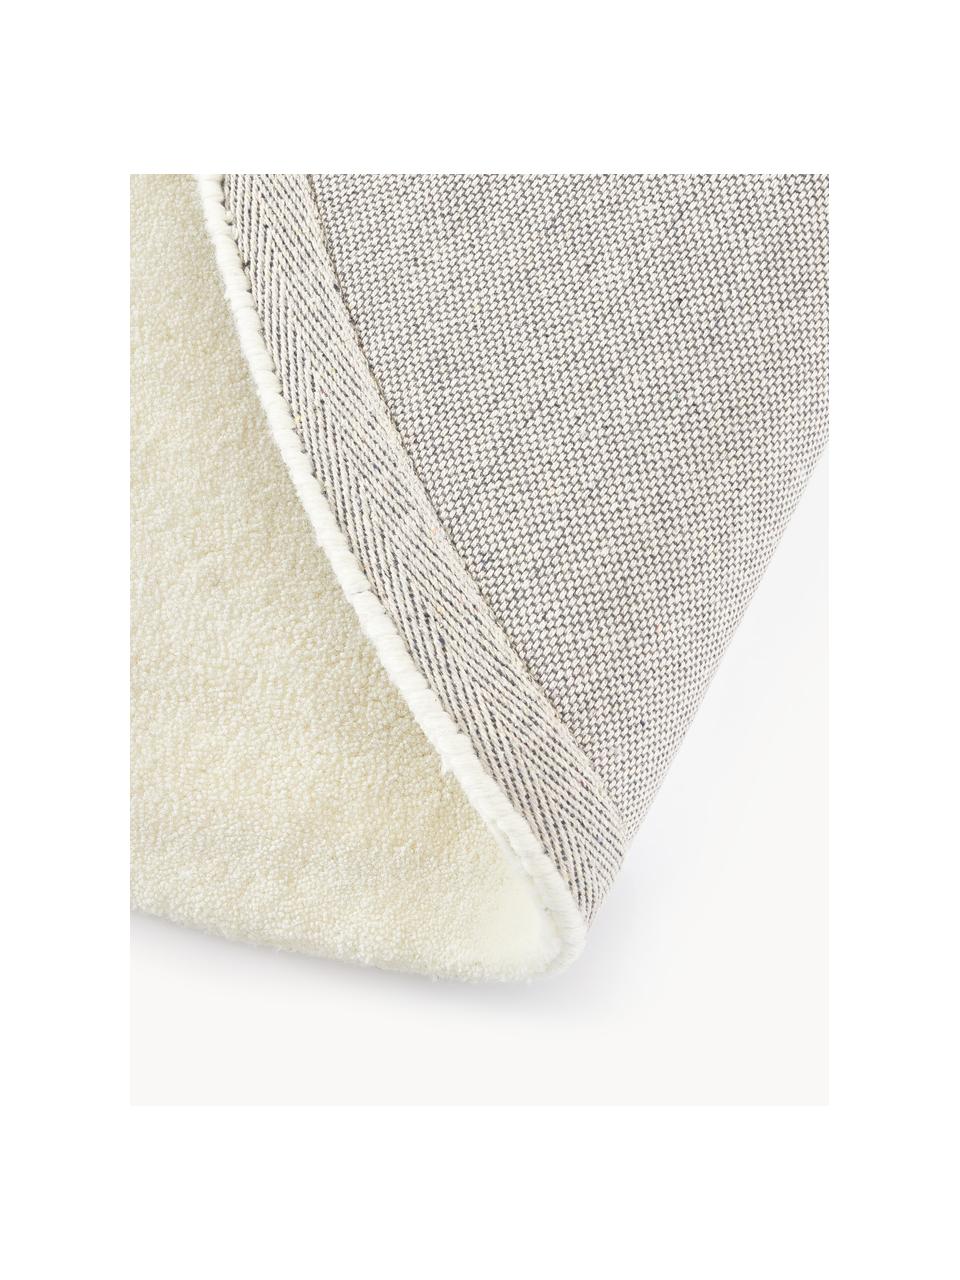 Tapis rond à poils ras en laine tufté main Jadie, Blanc crème, Ø 250 cm (taille XL)